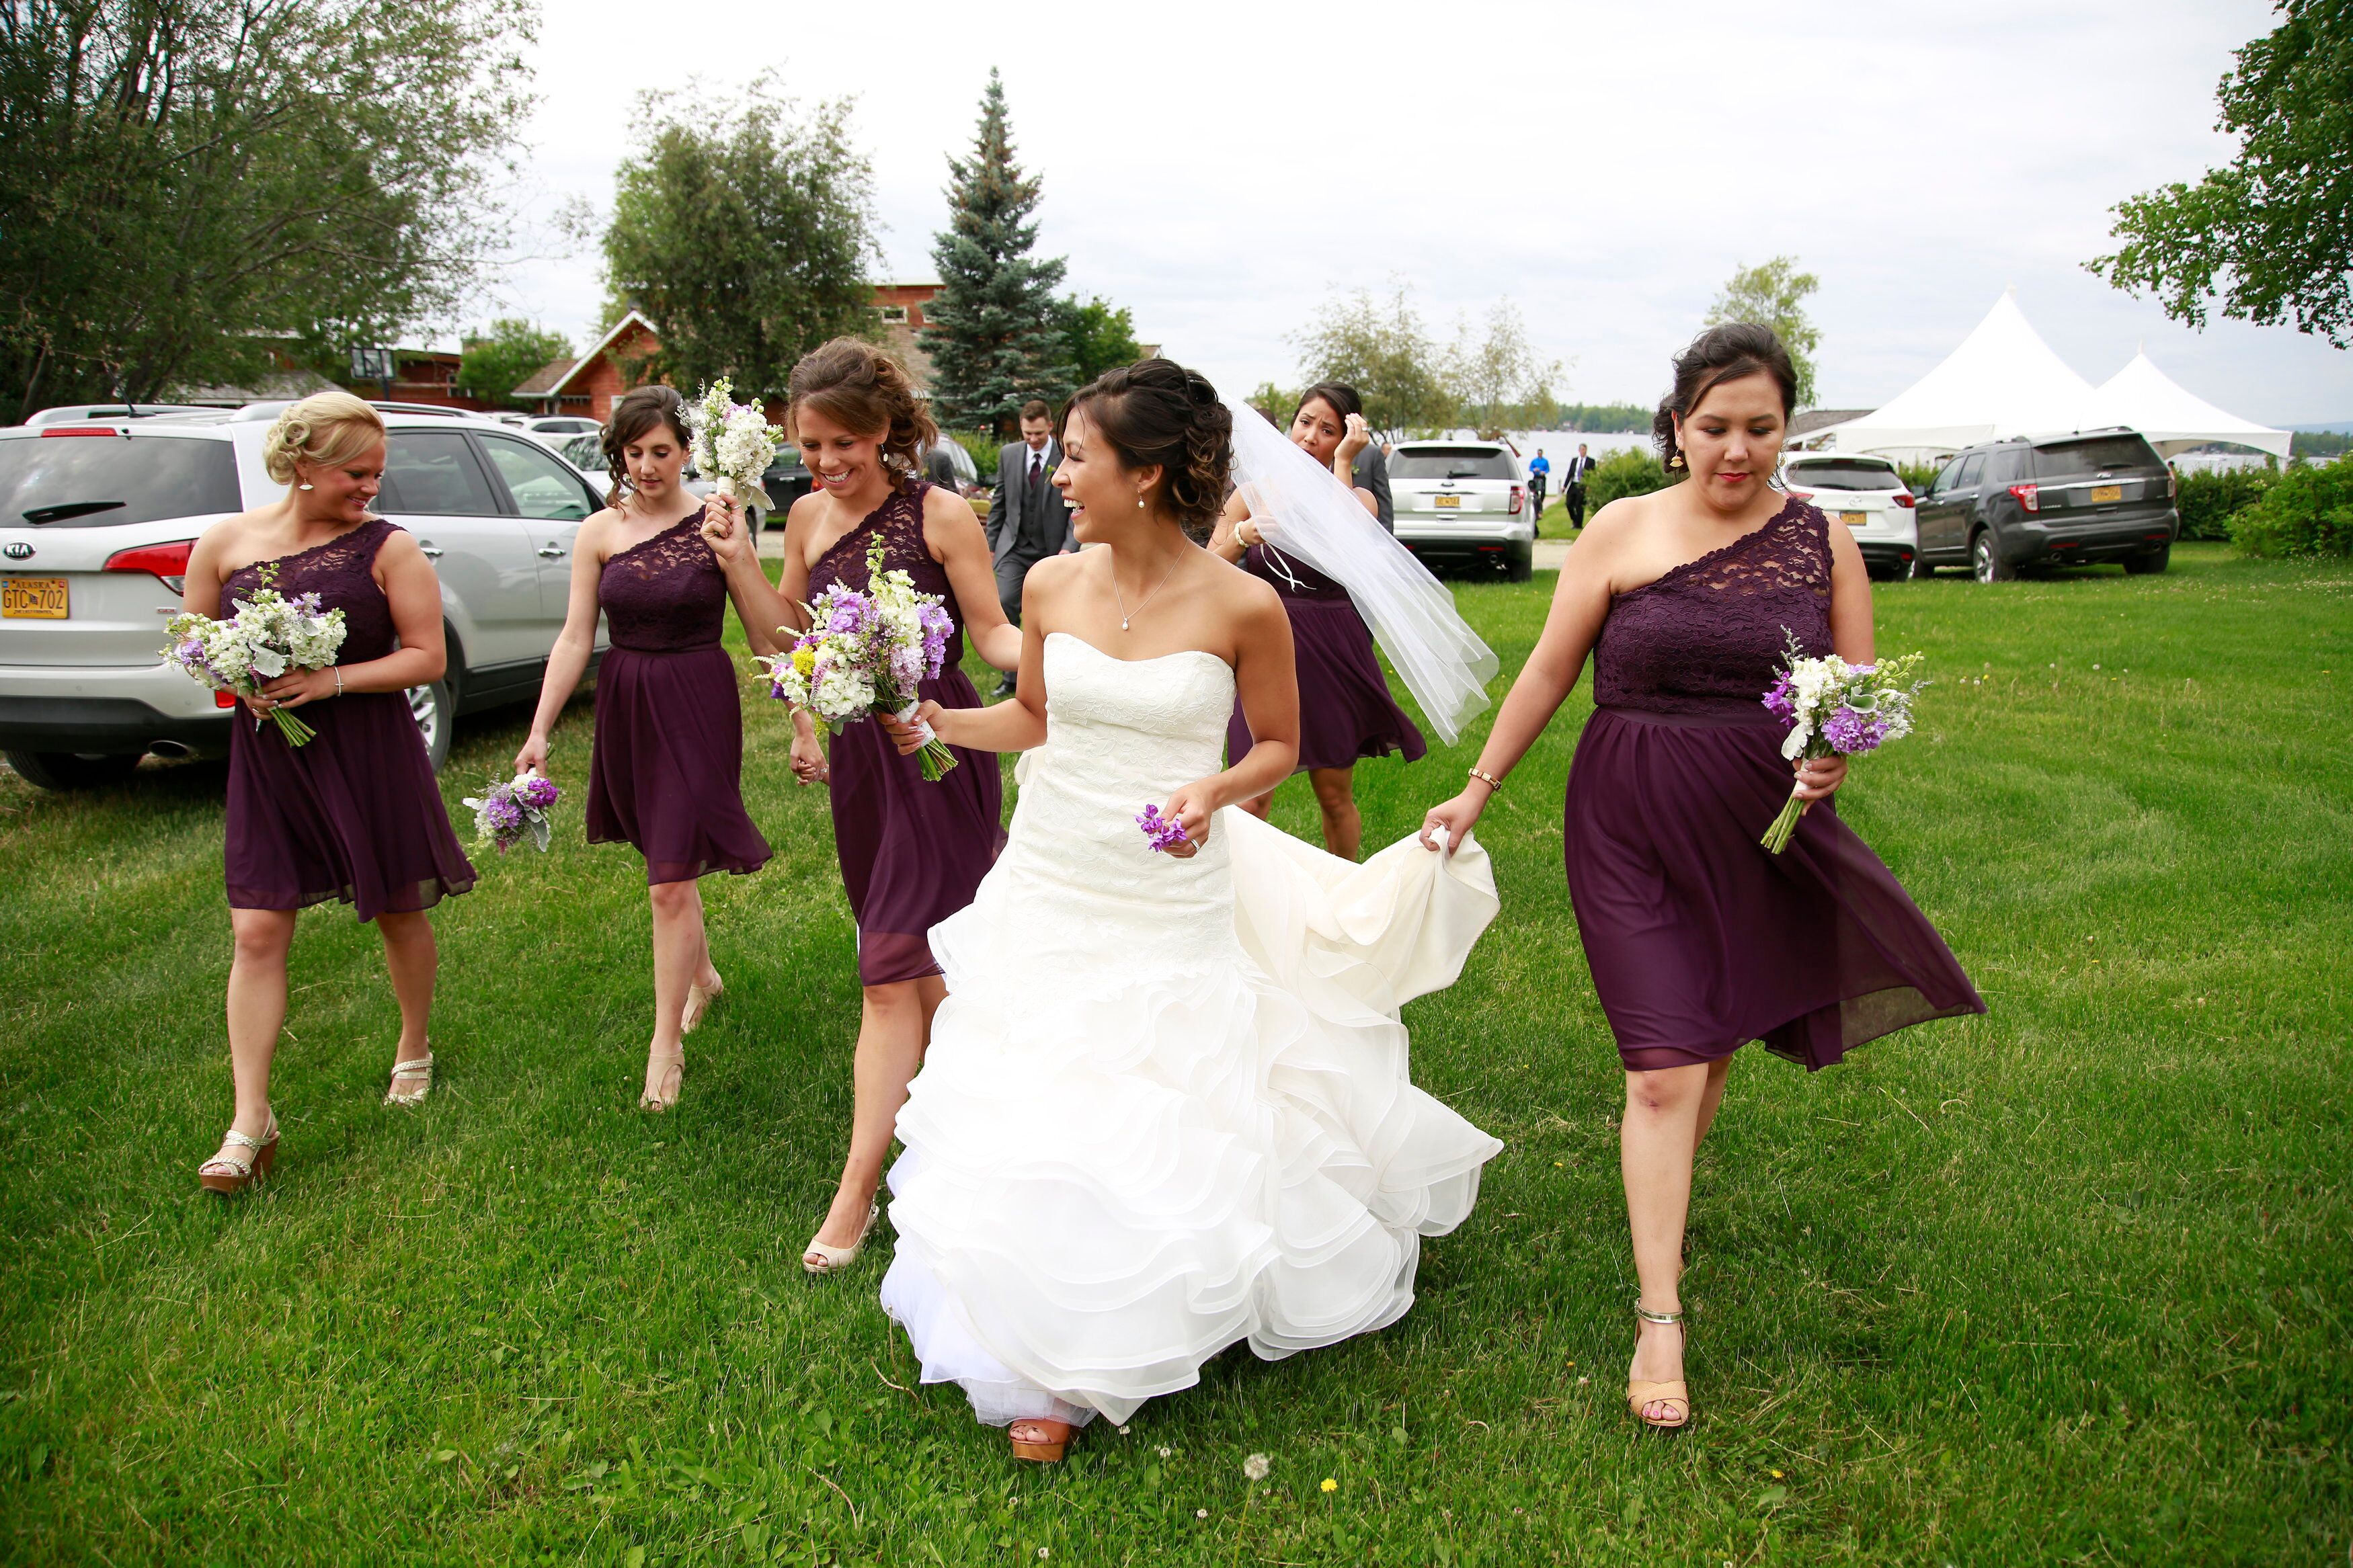 plum bridesmaid dresses